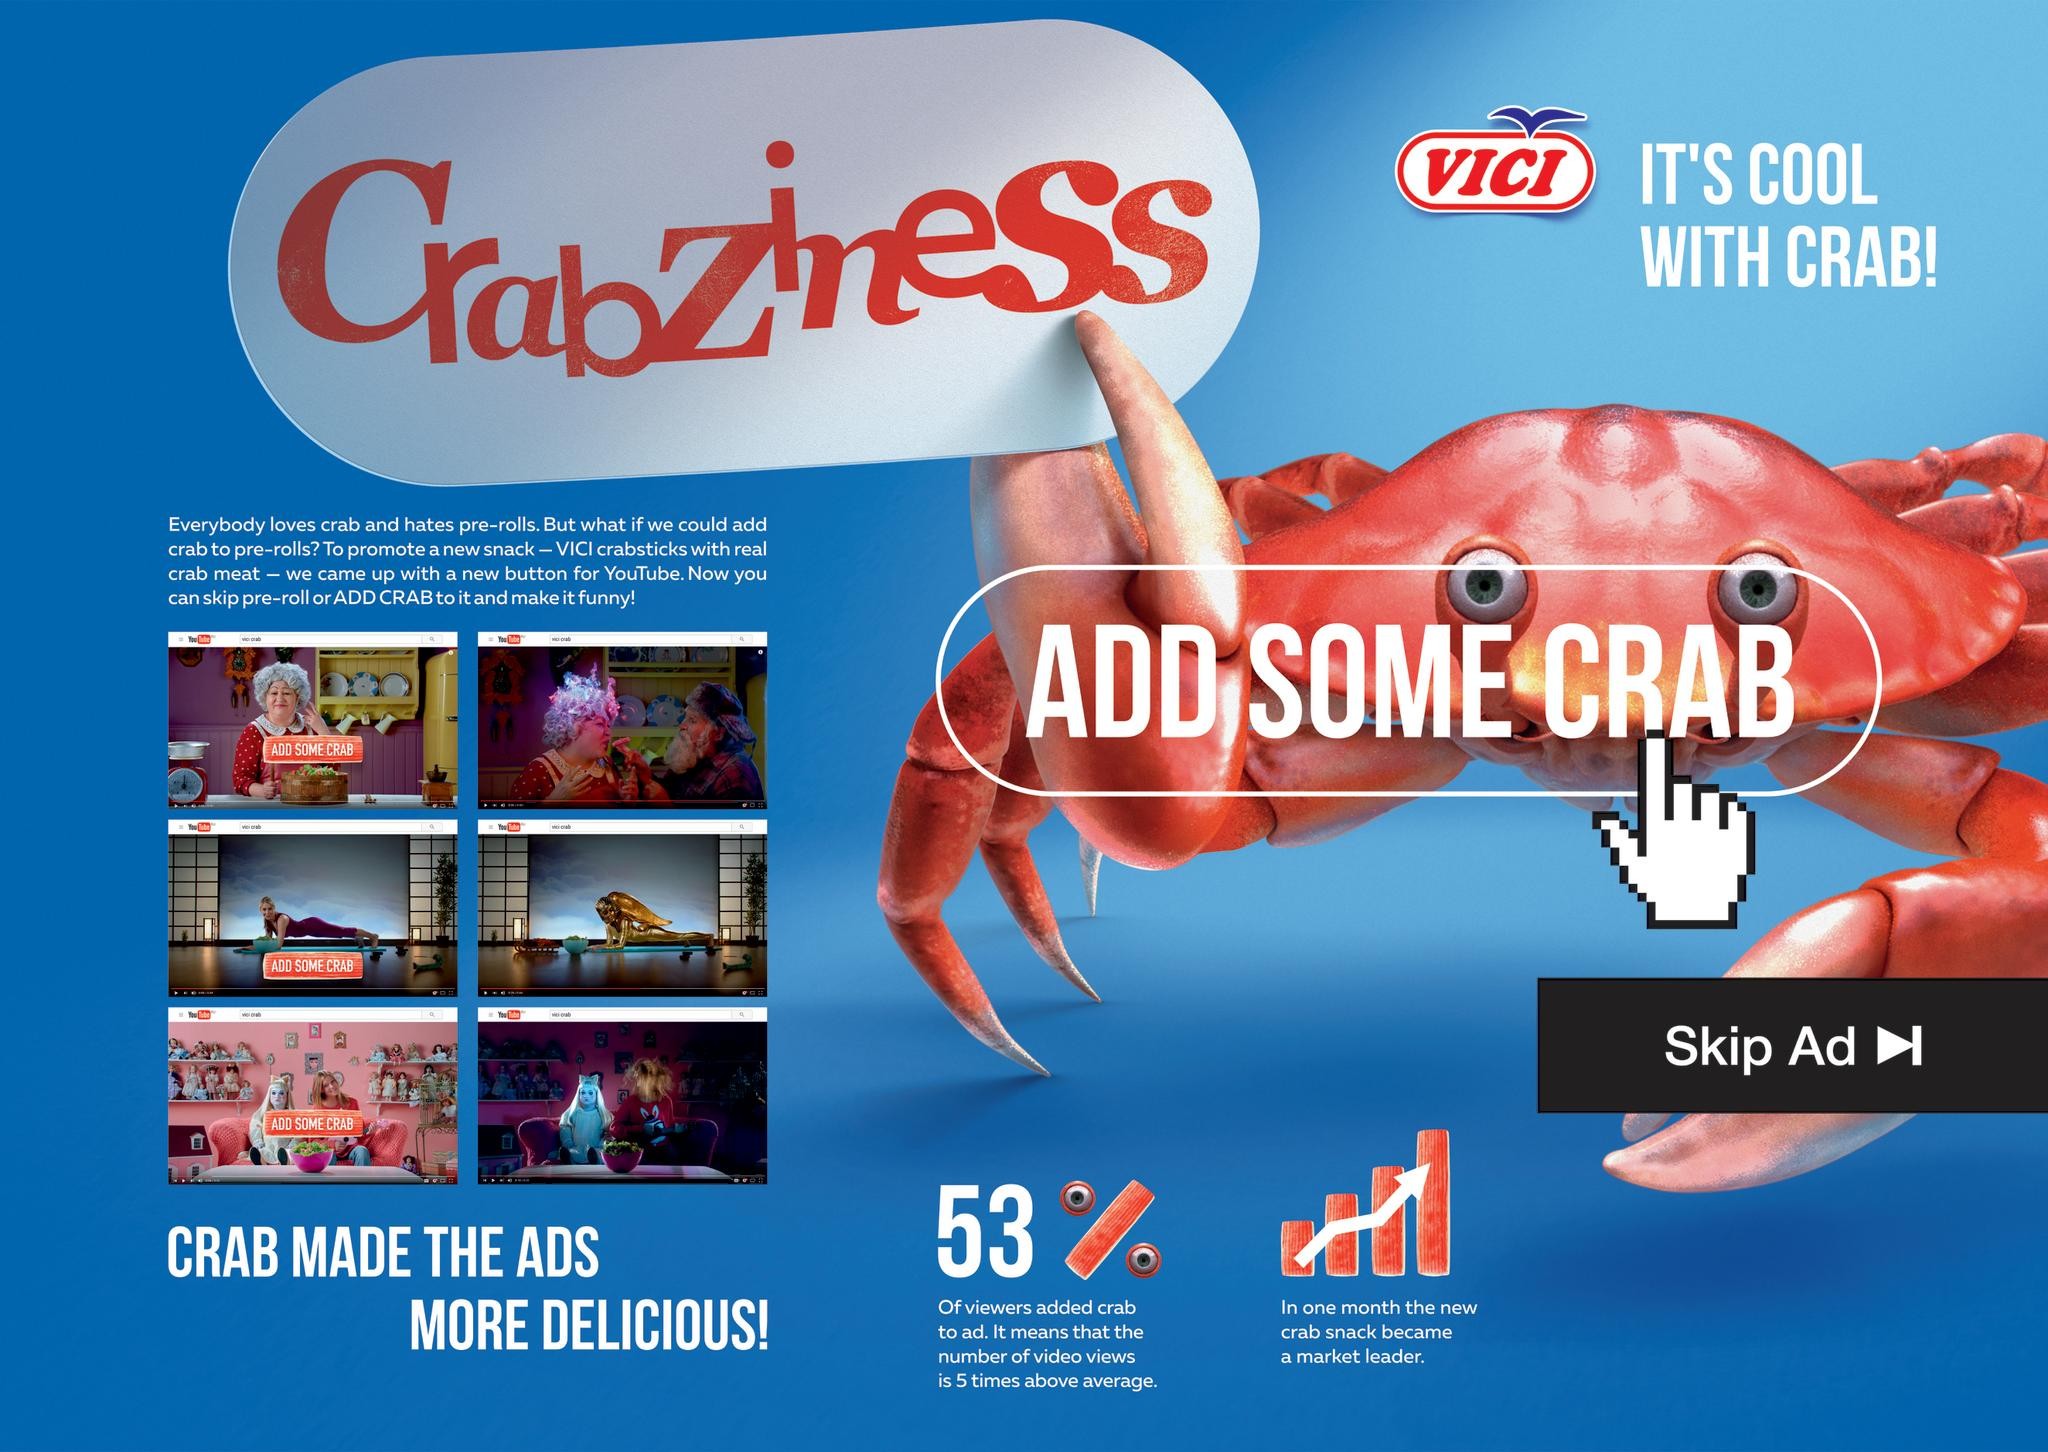 Crabziness